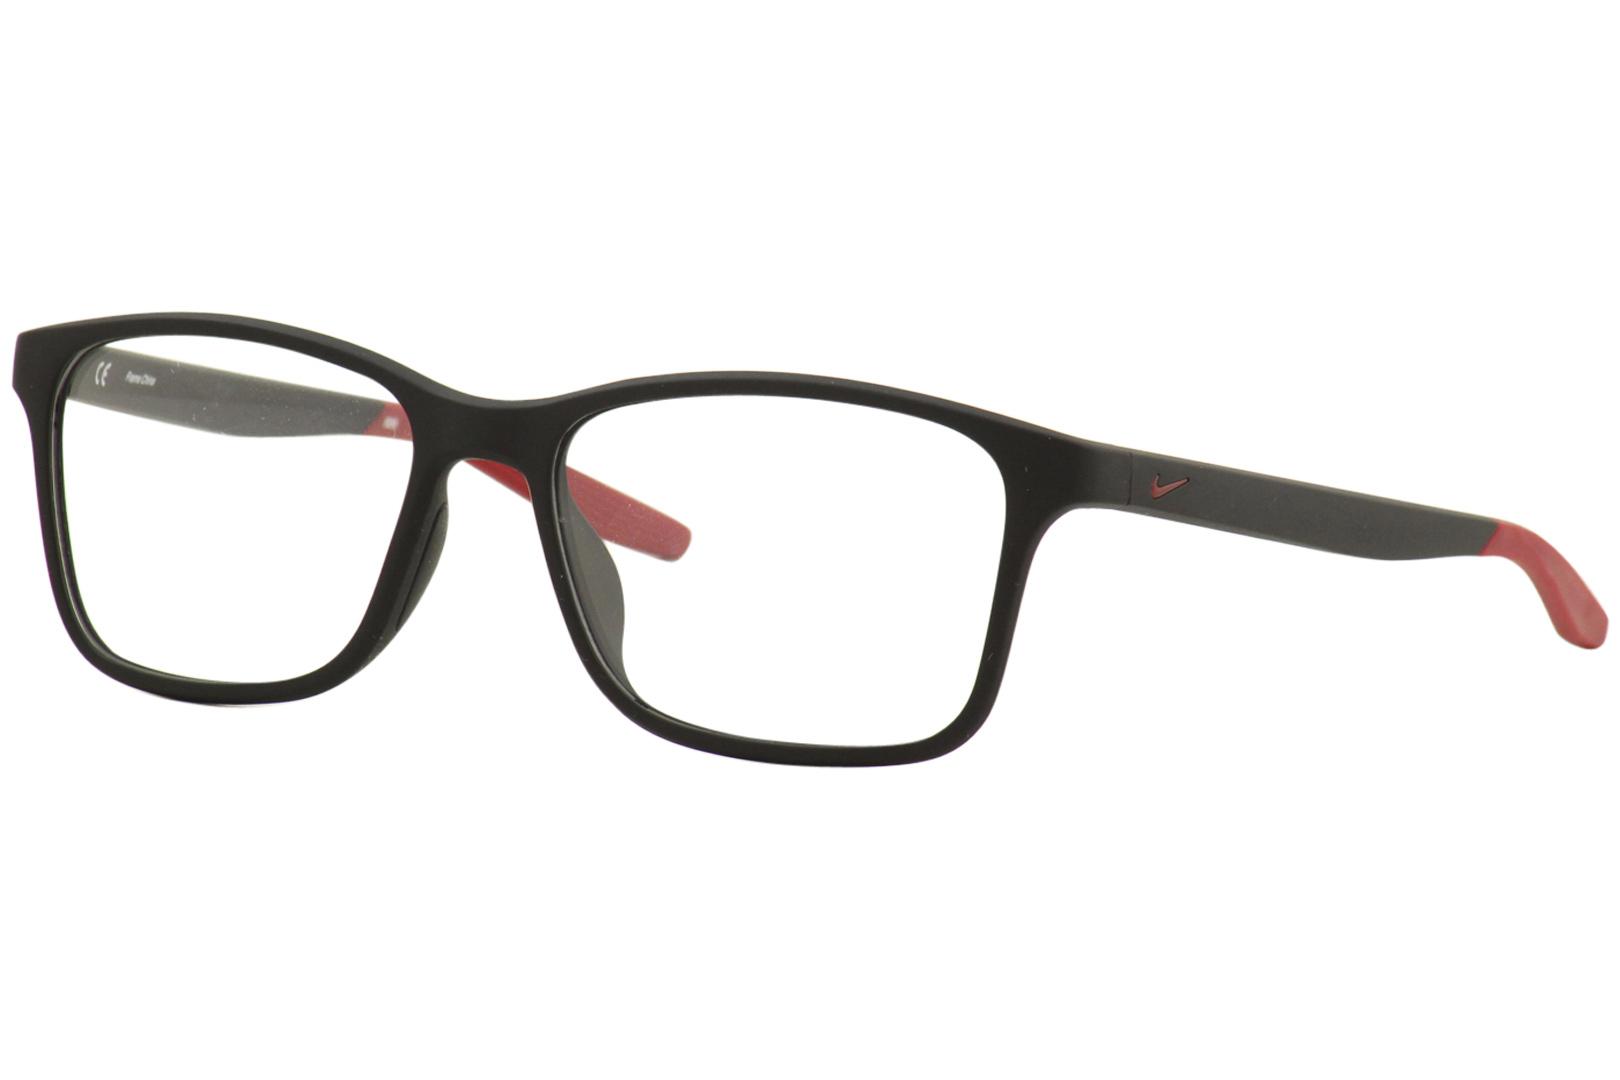 Nike Men's Eyeglasses 7117 006 Matte Black Full Rim Optical Frame 54mm ...